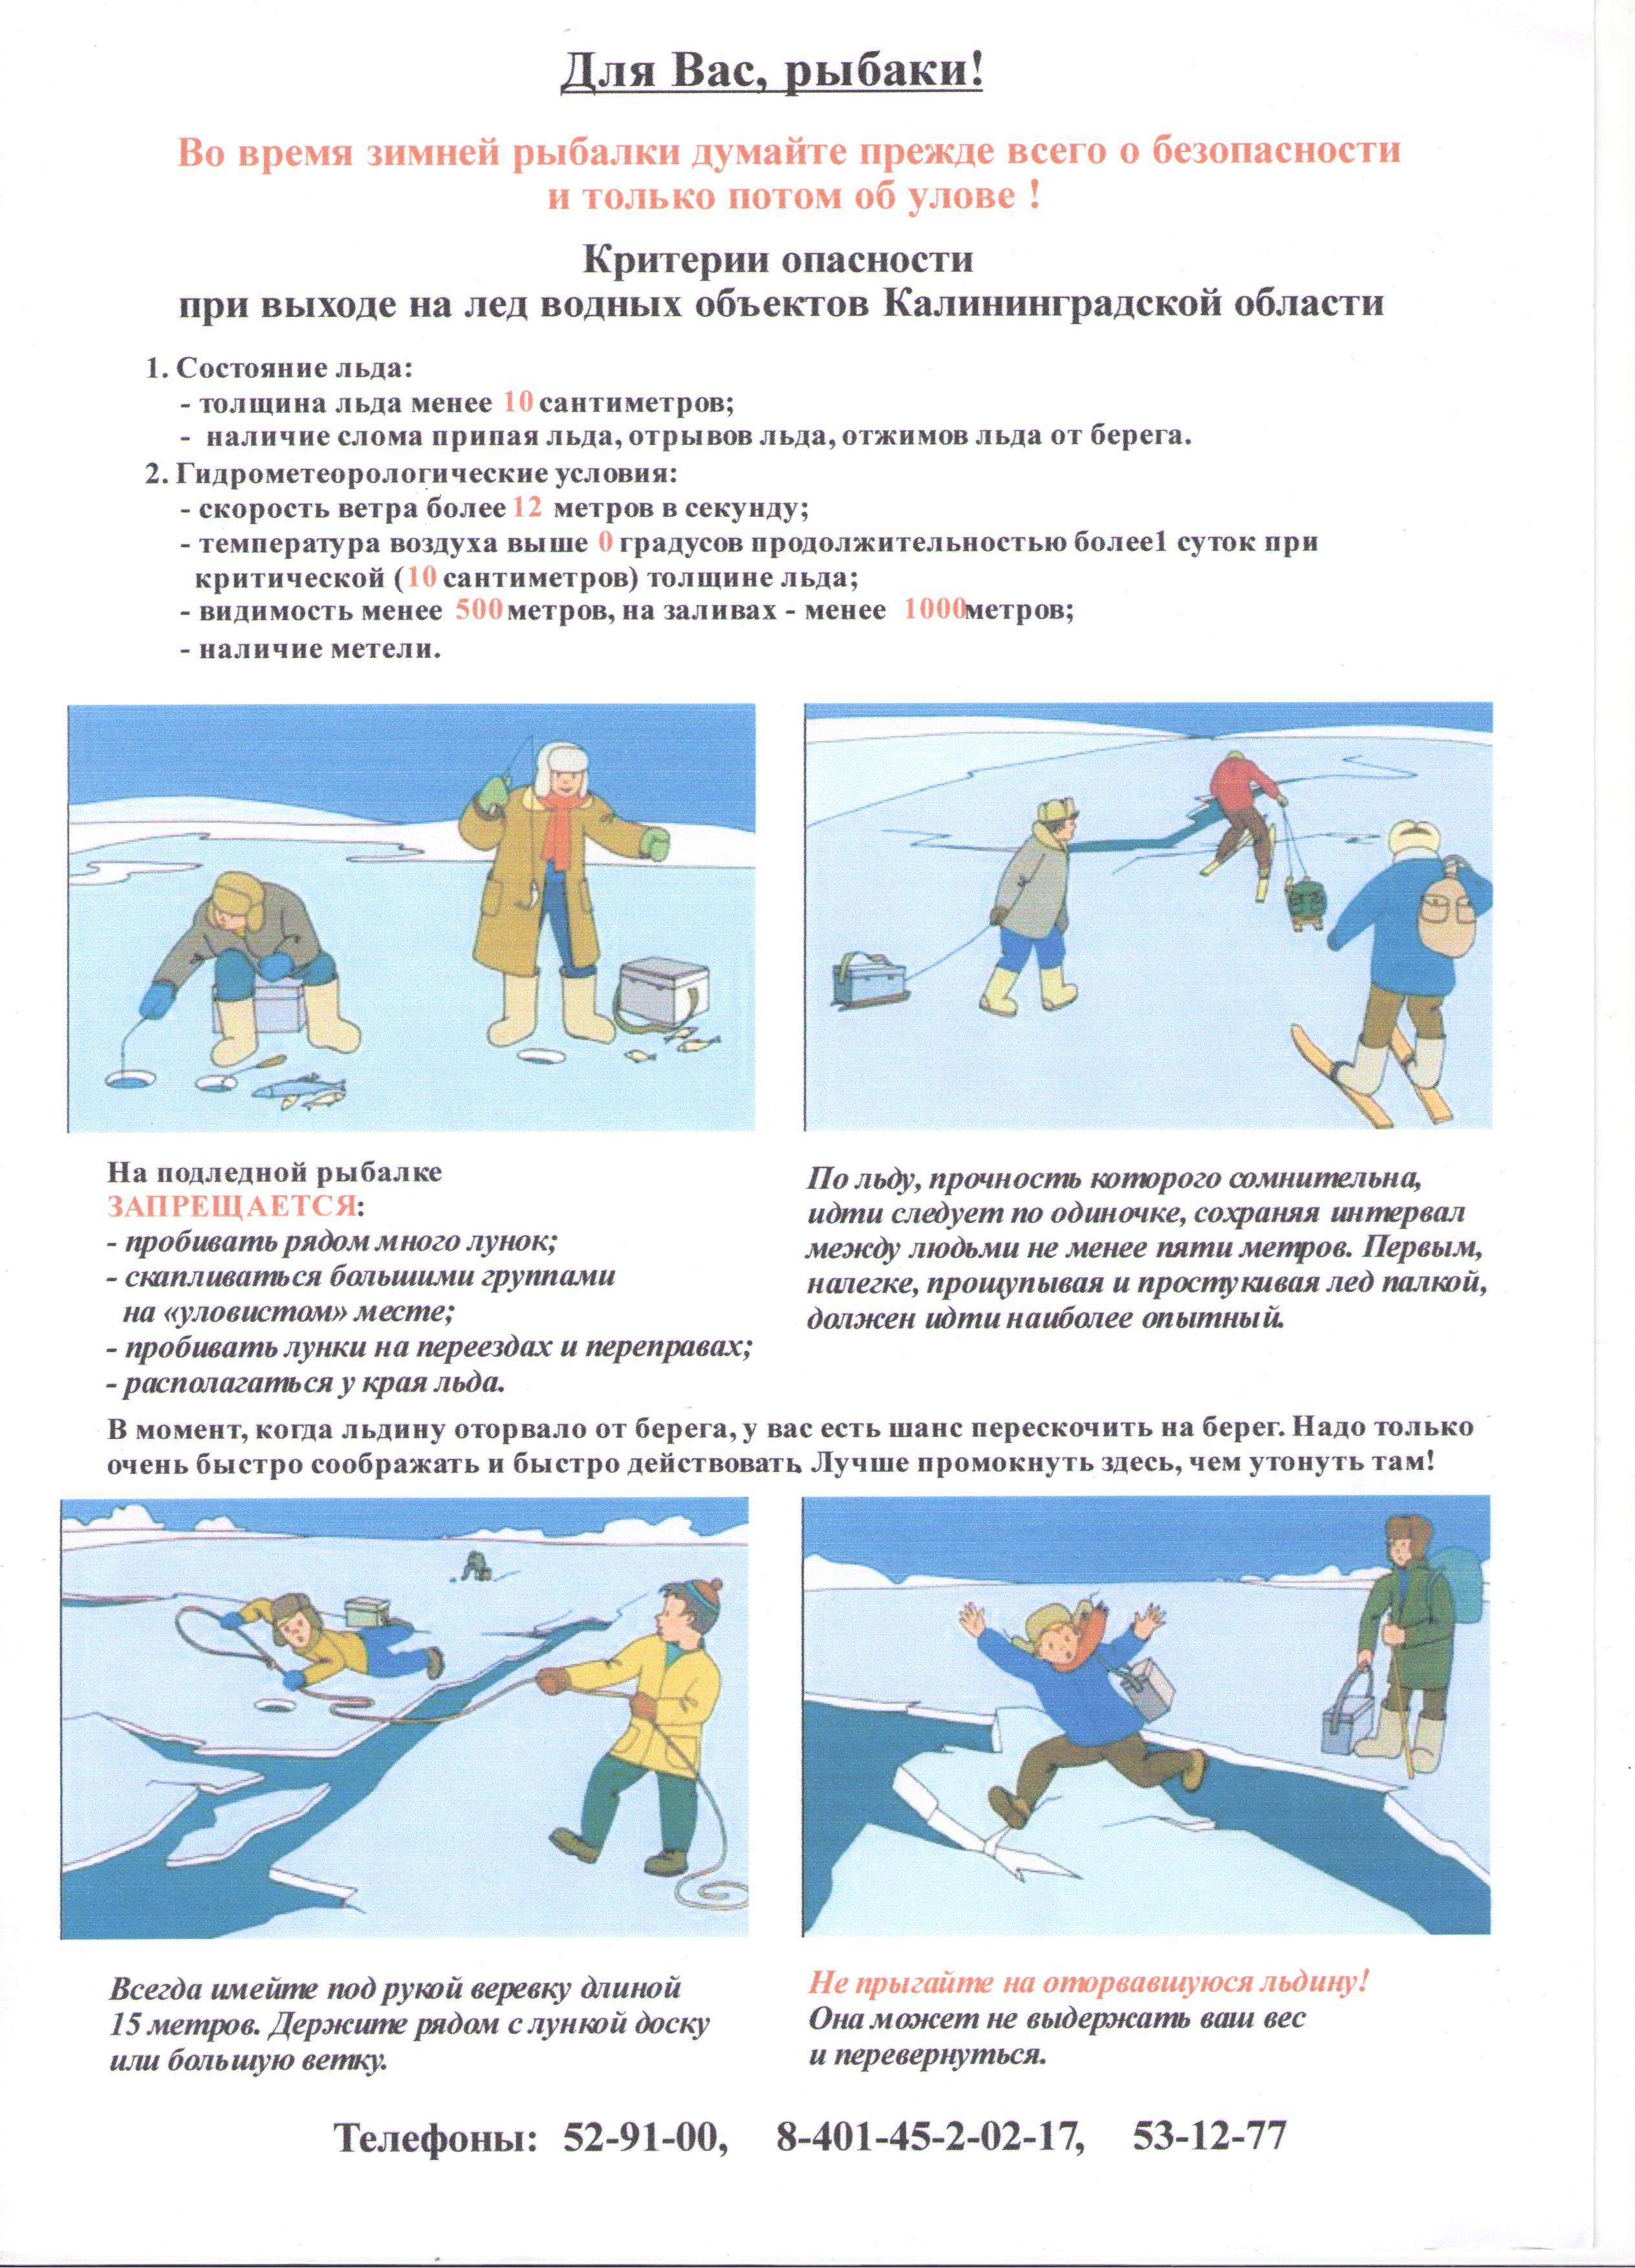 Зимняя рыбалка: особенности и виды, техника безопасности на льду